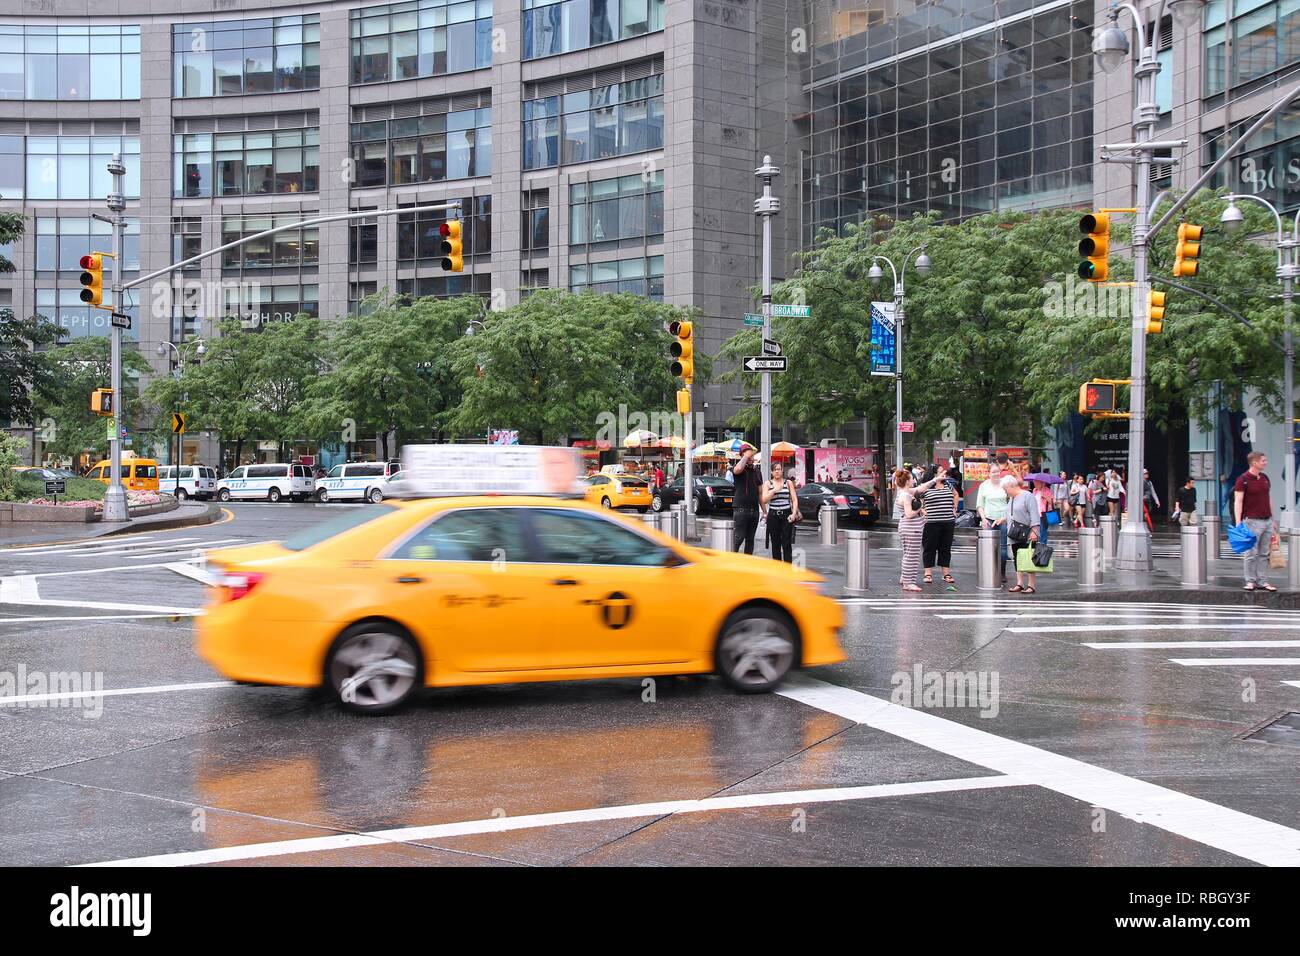 Nueva York, Estados Unidos - Julio 3, 2013: las unidades de taxis en la ciudad de Columbus Circle en Nueva York. Columbus Circle con famosos rascacielos del centro Time Warner finalizó en 2003 Foto de stock